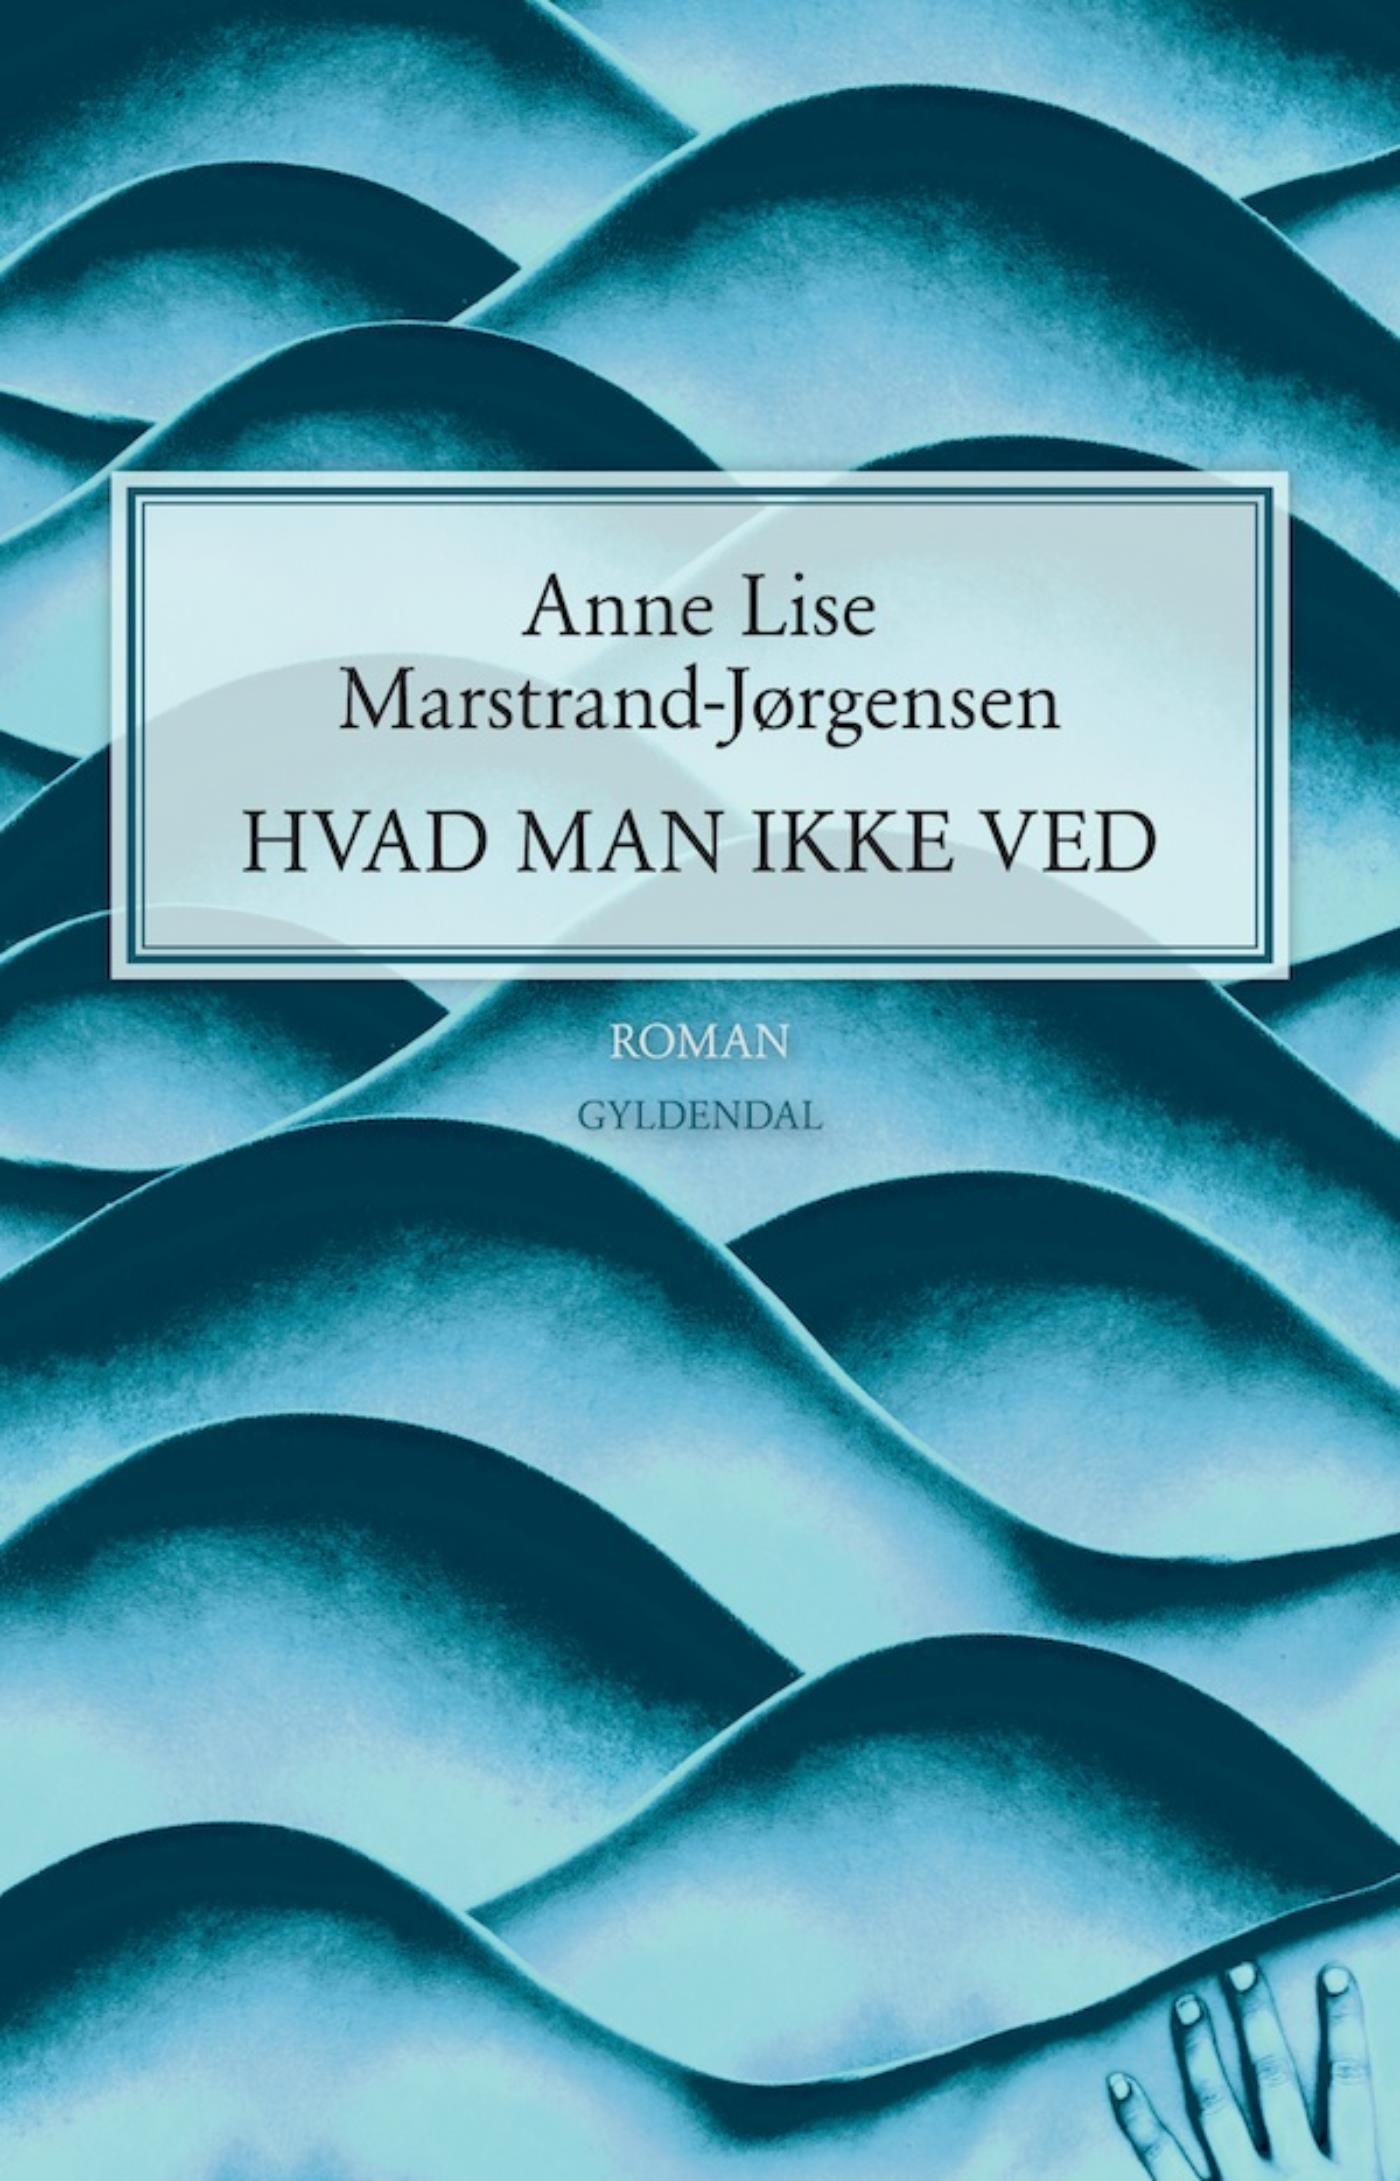 Hvad man ikke ved, e-bok av Anne Lise Marstrand-Jørgensen